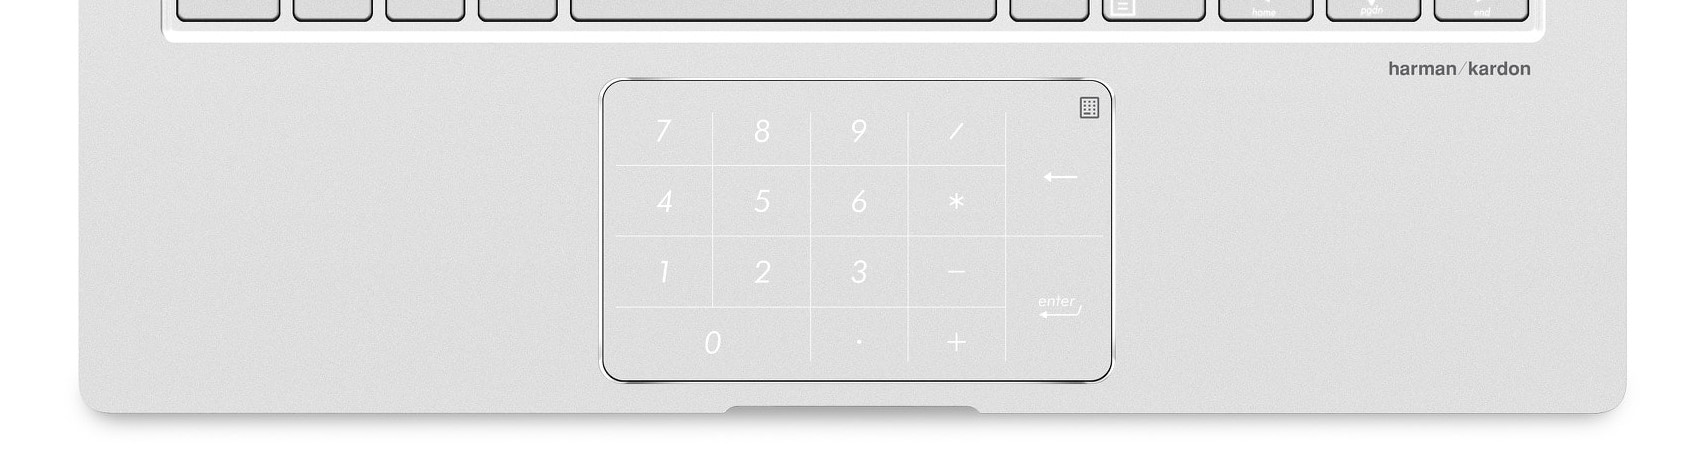 numerická klávesnice integrovaná v touchpadu